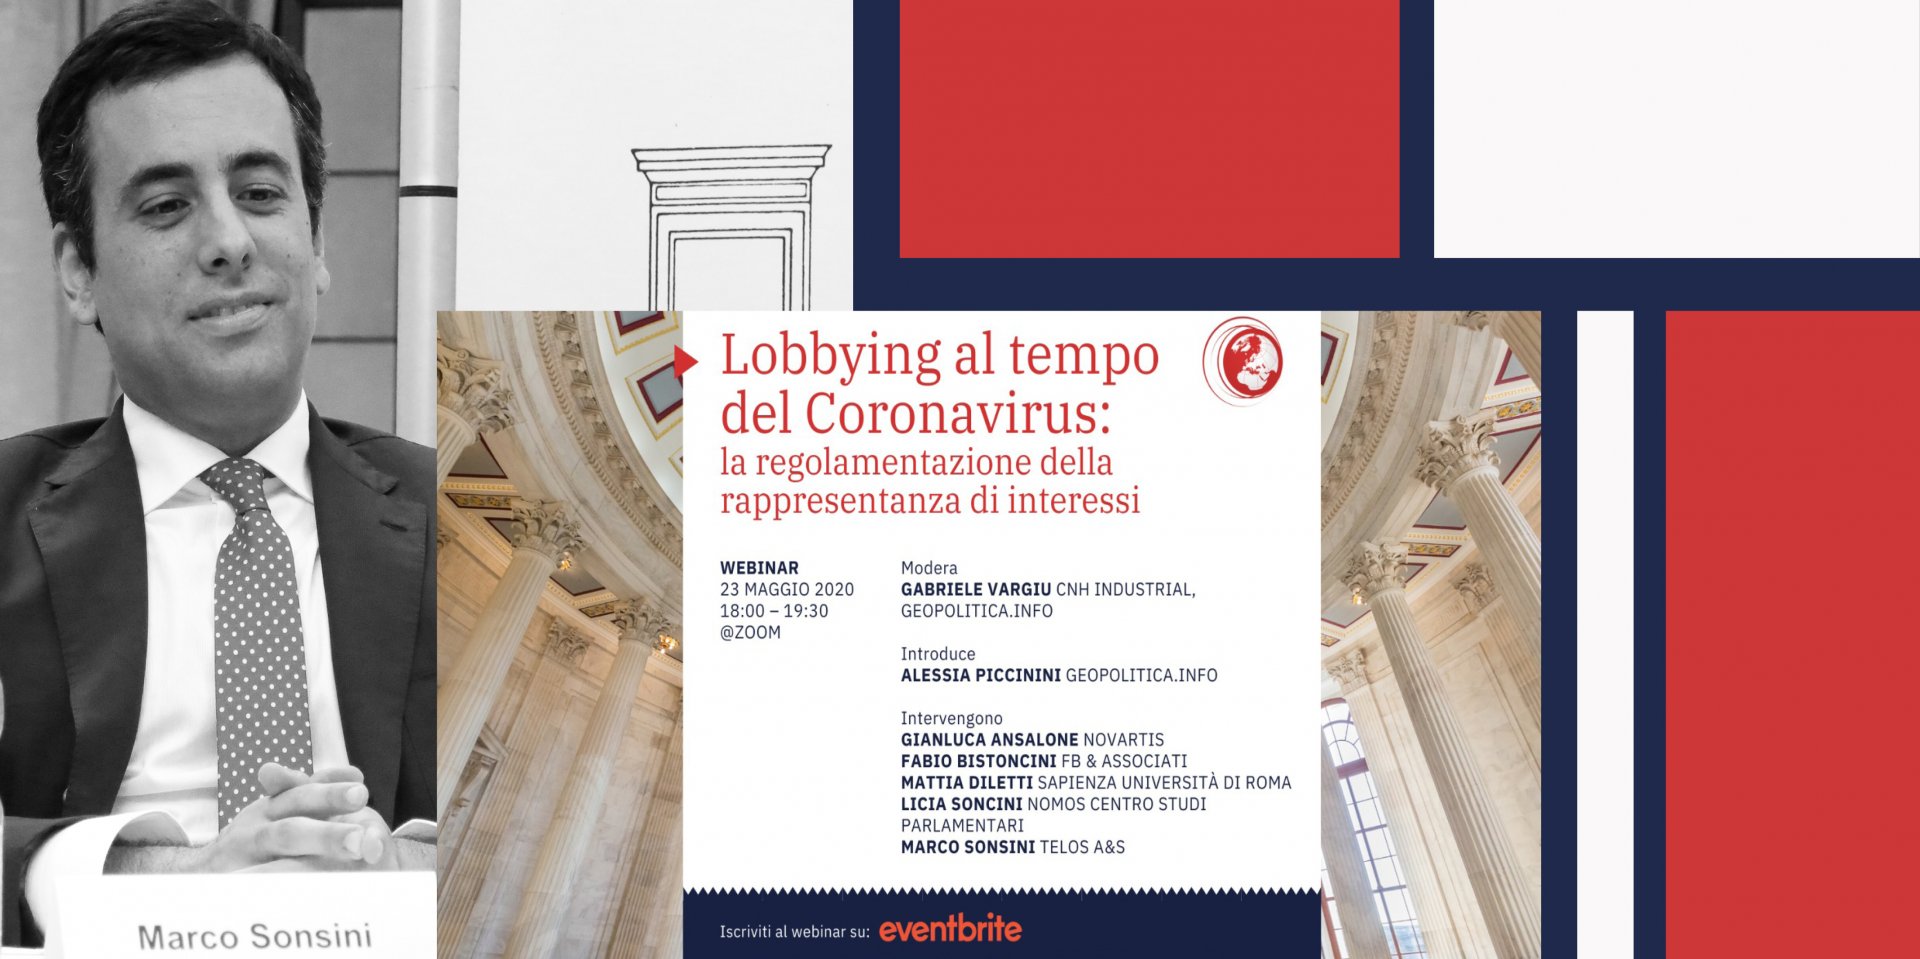 L’intervento di Marco Sonsini al webinar “Lobbying al tempo del Coronavirus: la regolamentazione della rappresentanza di interessi”
